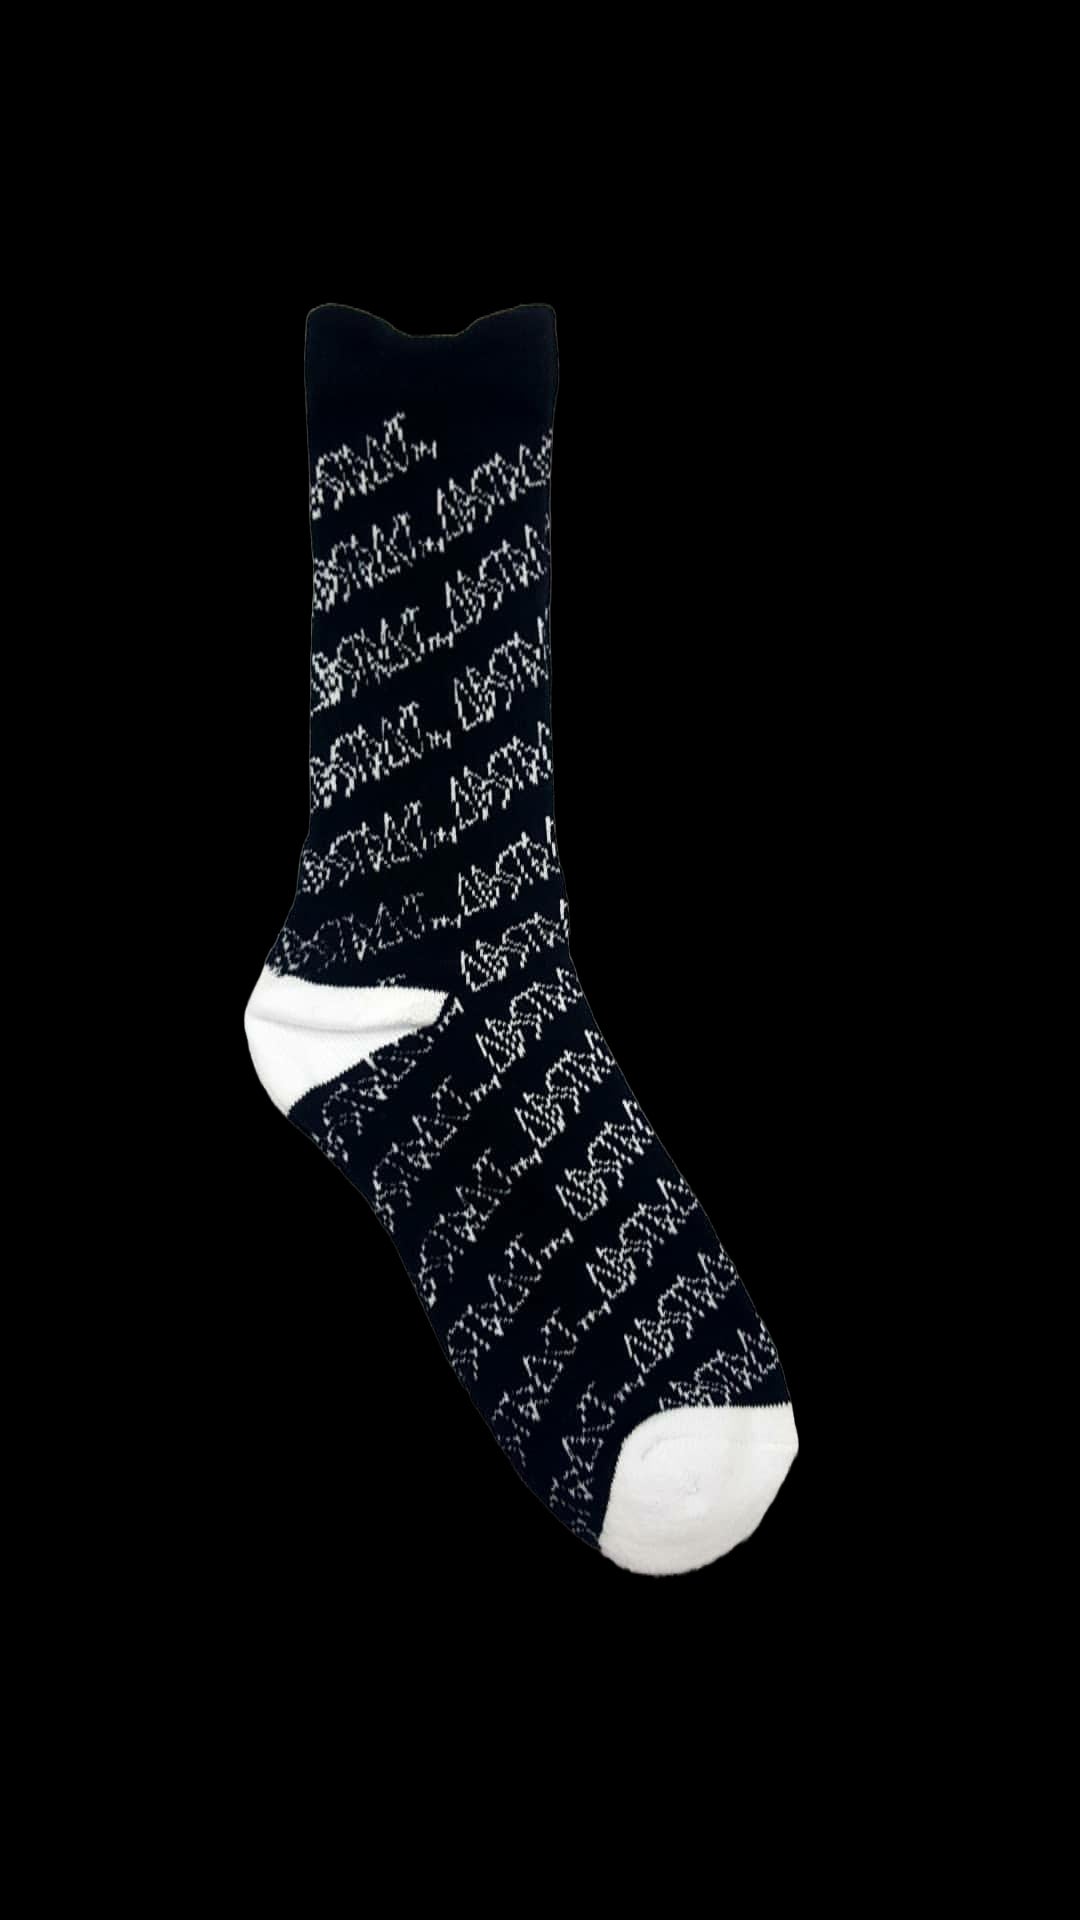 Overkill Sock Socks White/Black / One Size / Cotton,Black/White / One Size / Cotton,Yellow/Black / One Size / Cotton,Gold/Black / One Size / Cotton,Purple/Gold / One Size / Cotton,Red/White / One Size / Cotton,Gray/Black / One Size / Cotton Black